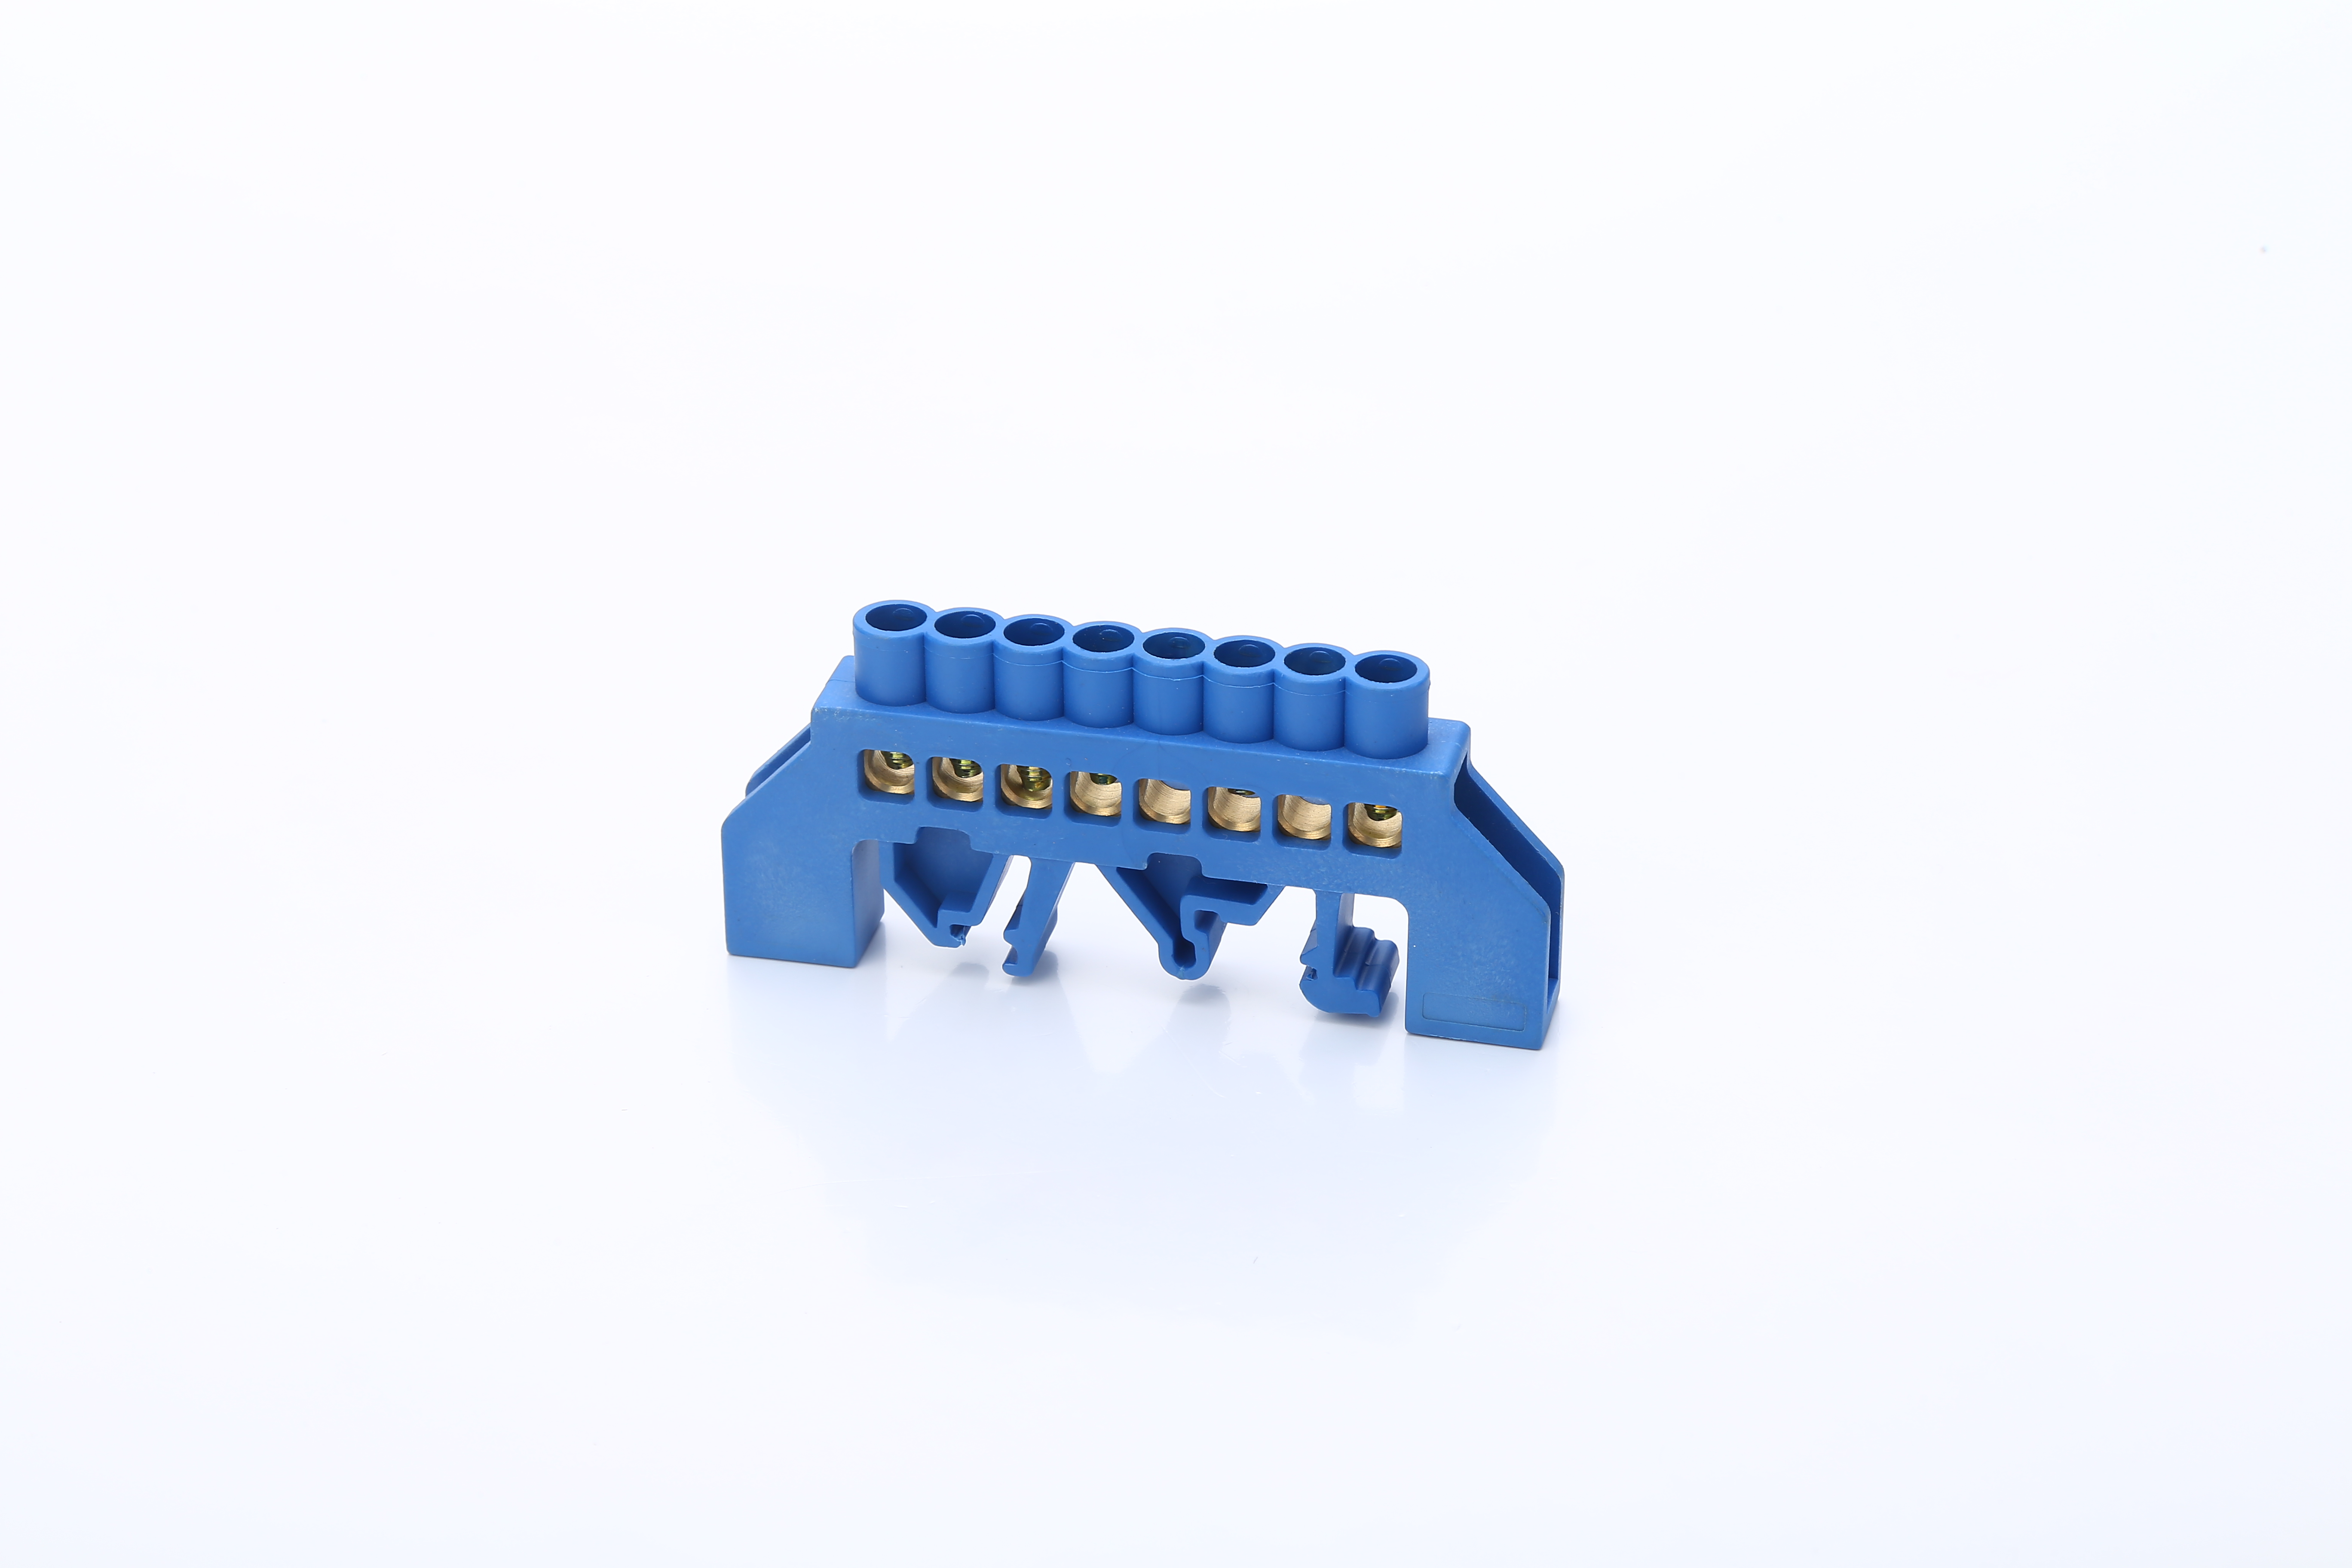 Tira de conector de bloque de terminales de tornillo de 8 posiciones azul Terminal de latón de tornillo de cable de distribución eléctrica